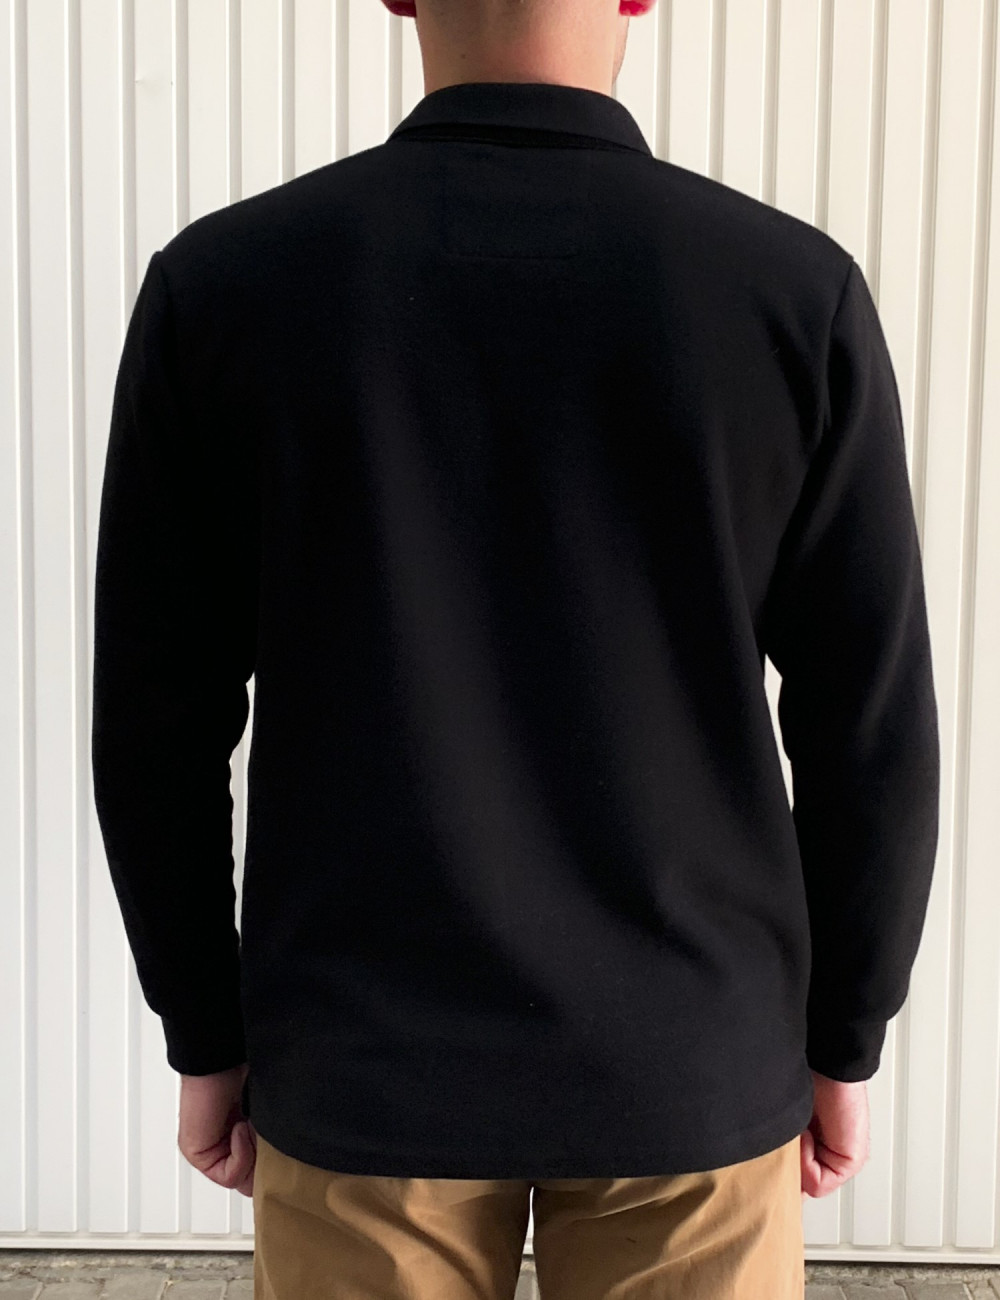 Ανδρική μαύρη Polo μακρυμάνικη μπλούζα Plus size Everbest 241032